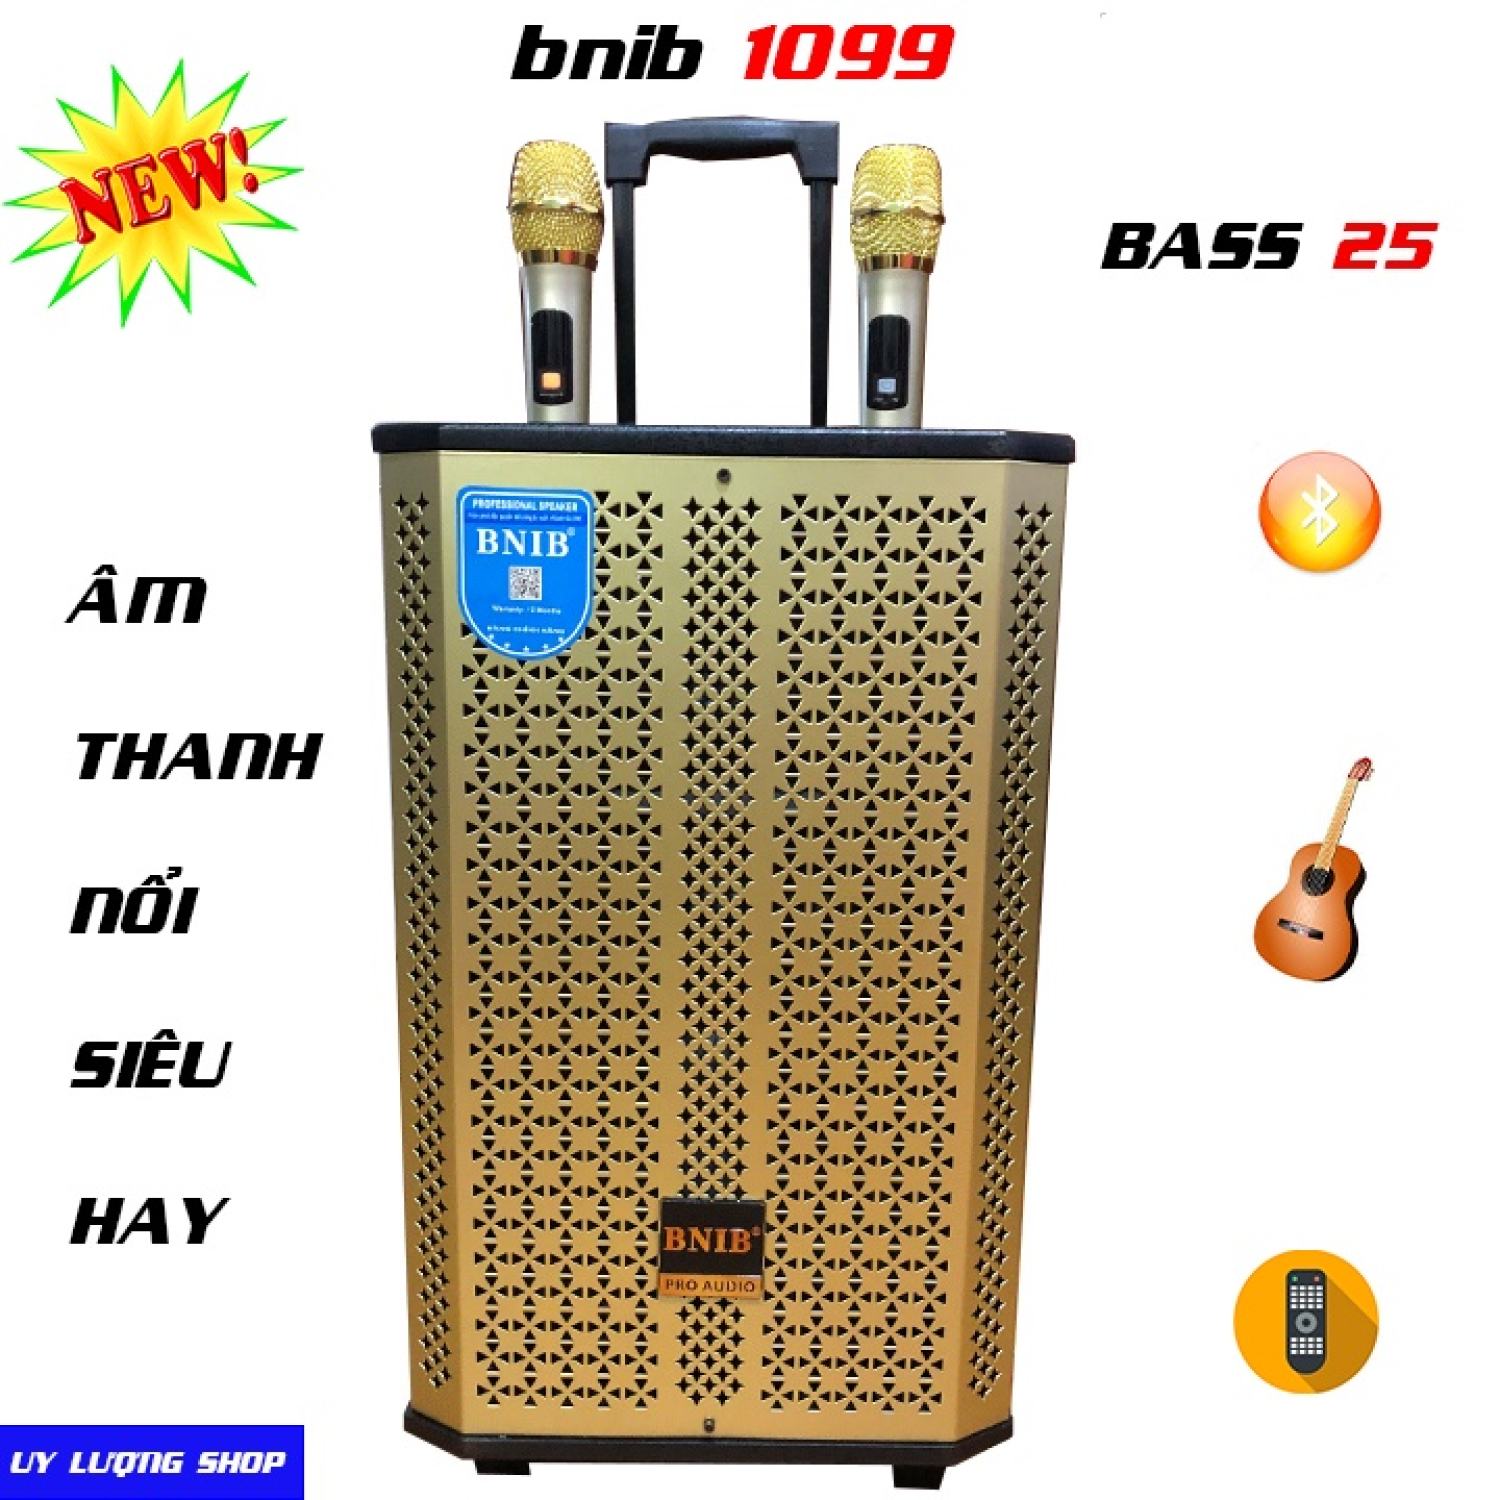 Loa Kéo Hát Karaoke Cao Cấp BNIB 1099 Bass 25cm | Nhạc Bass Cực Chất, kèm 2 tay Micro bắt giọng nhạy mẫu mới 2022